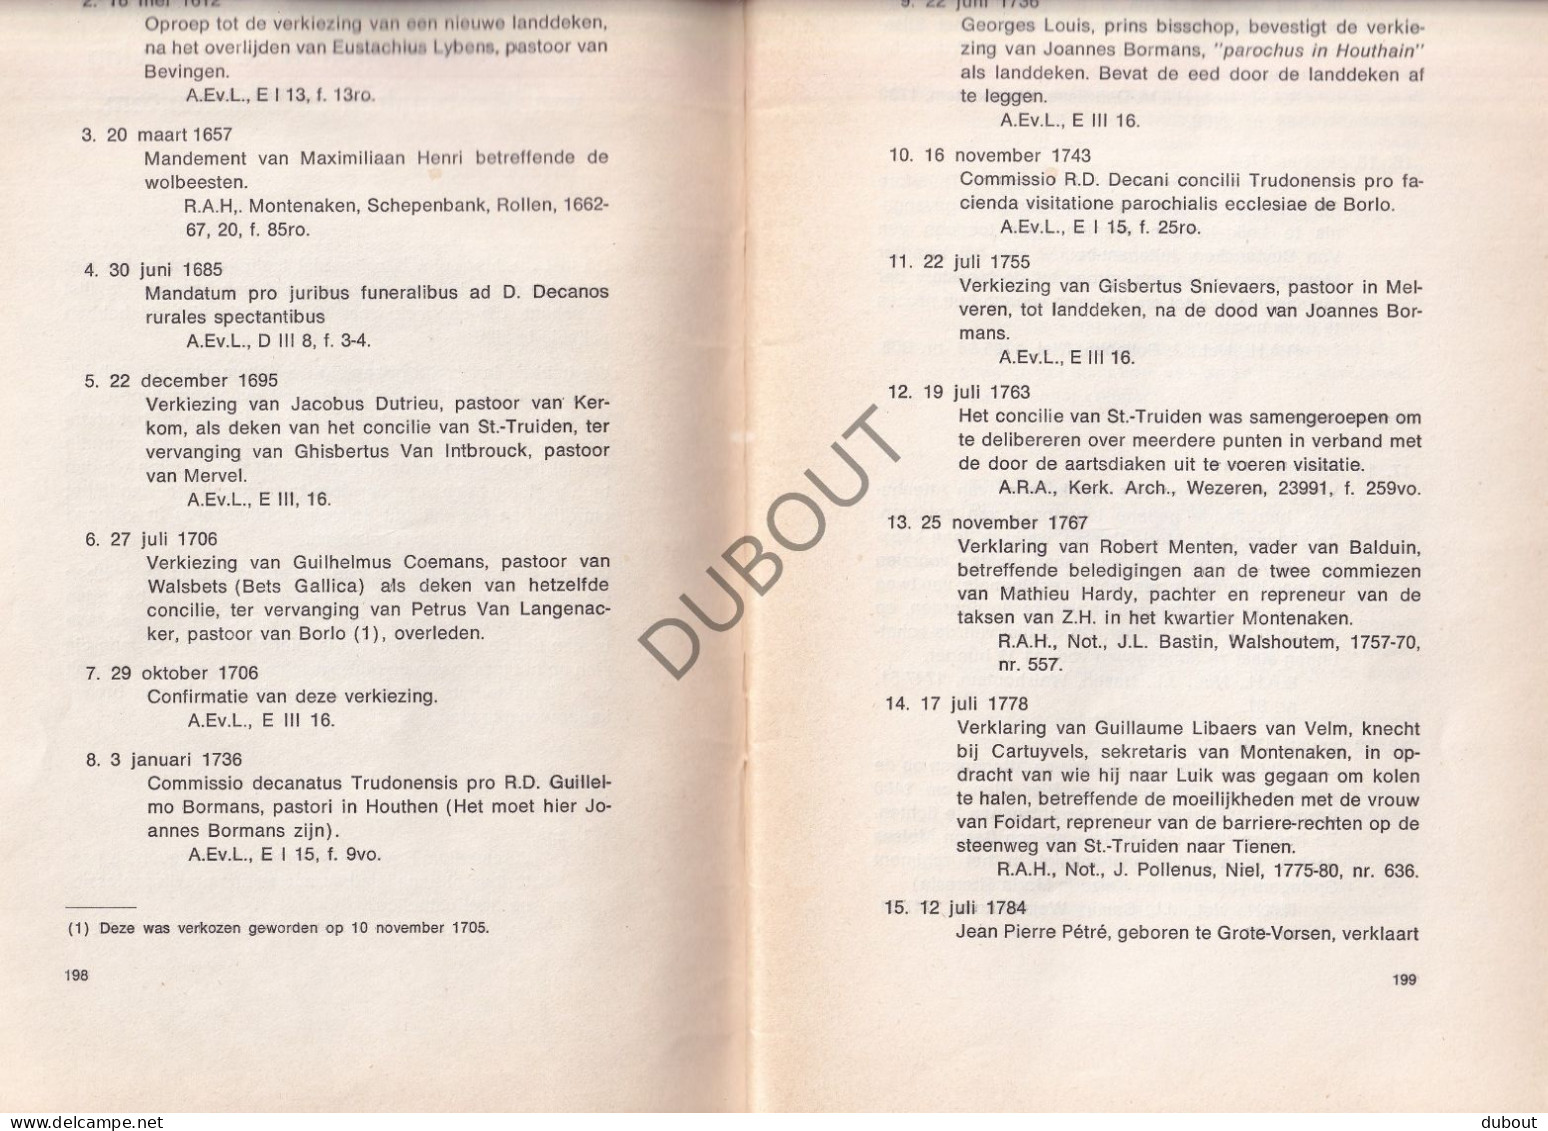 Landen/Montenaken/Walshoutem - Bouwstenen Voor De Geschiedenis W. Massin 1973 Overdruk (V3005) - Antiguos